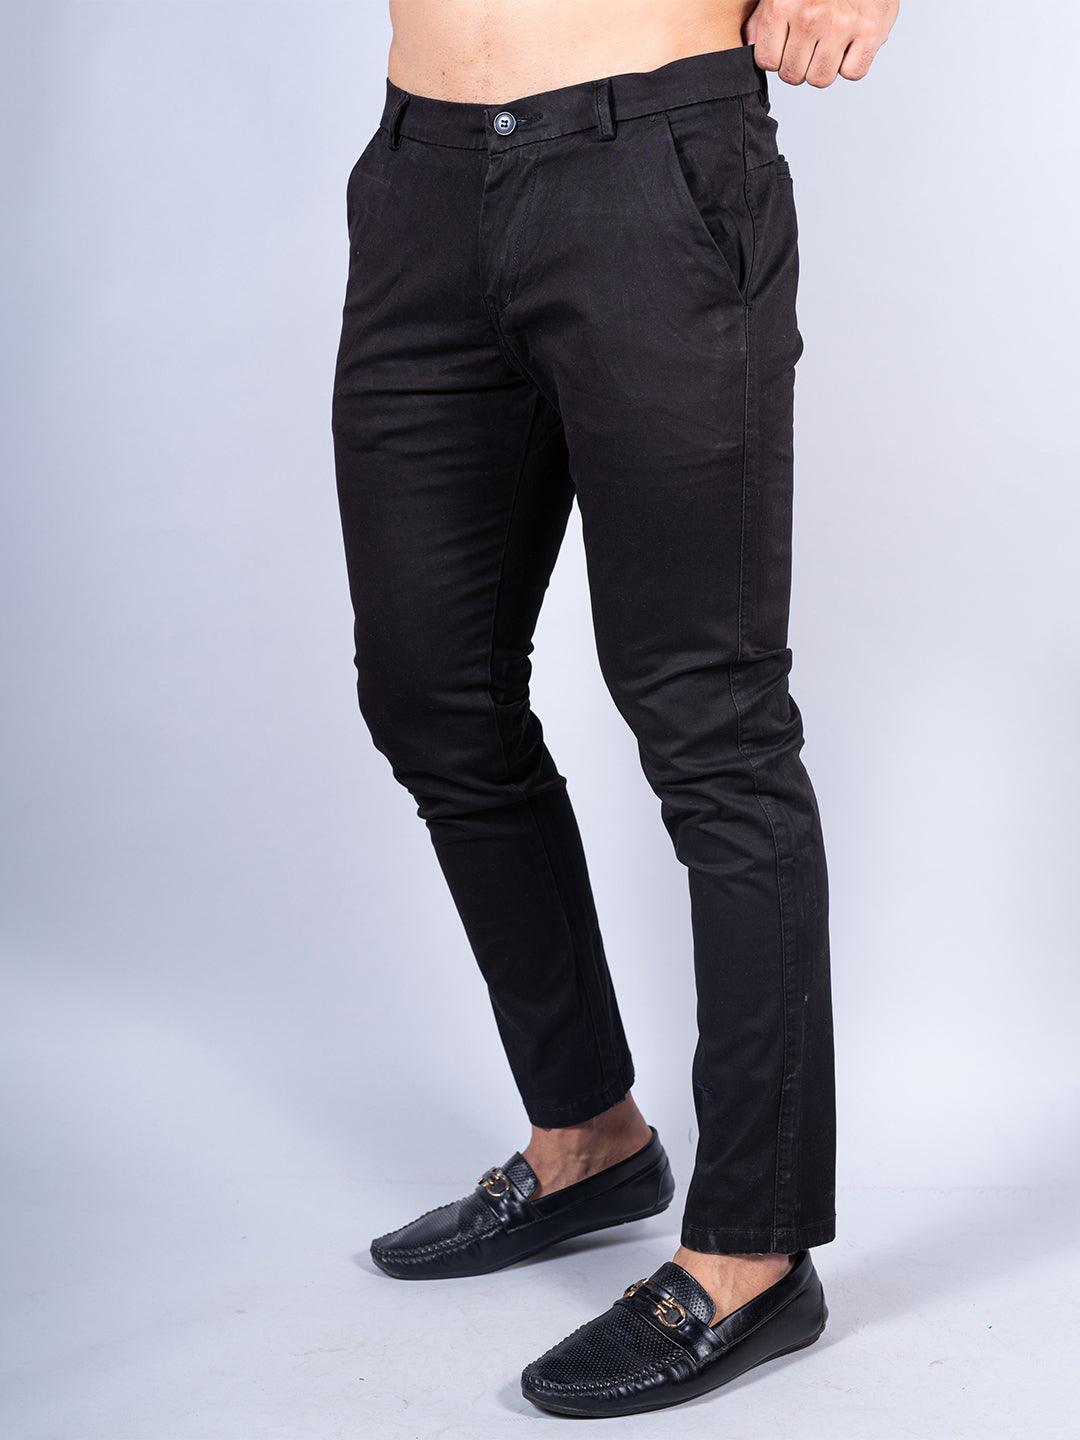 Buy Black Color Ankle Length Fusion Cotton Pant Online